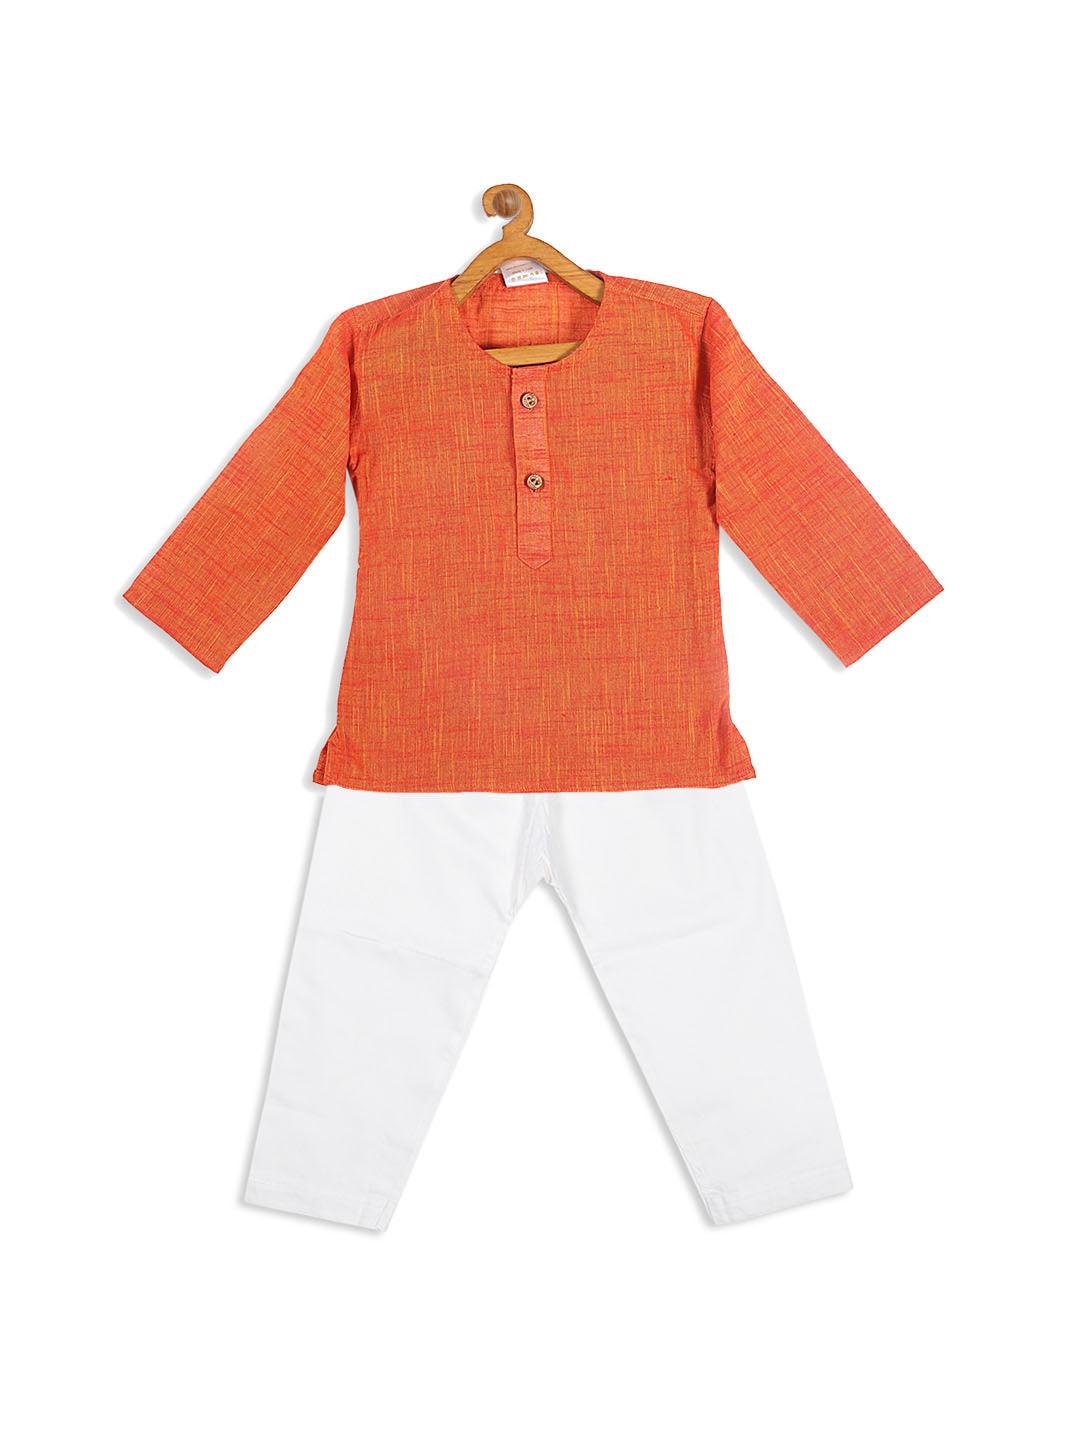 VASTRAMAY SISHU Boys' Orange Cotton Kurta and White Pyjama Set - Uboric